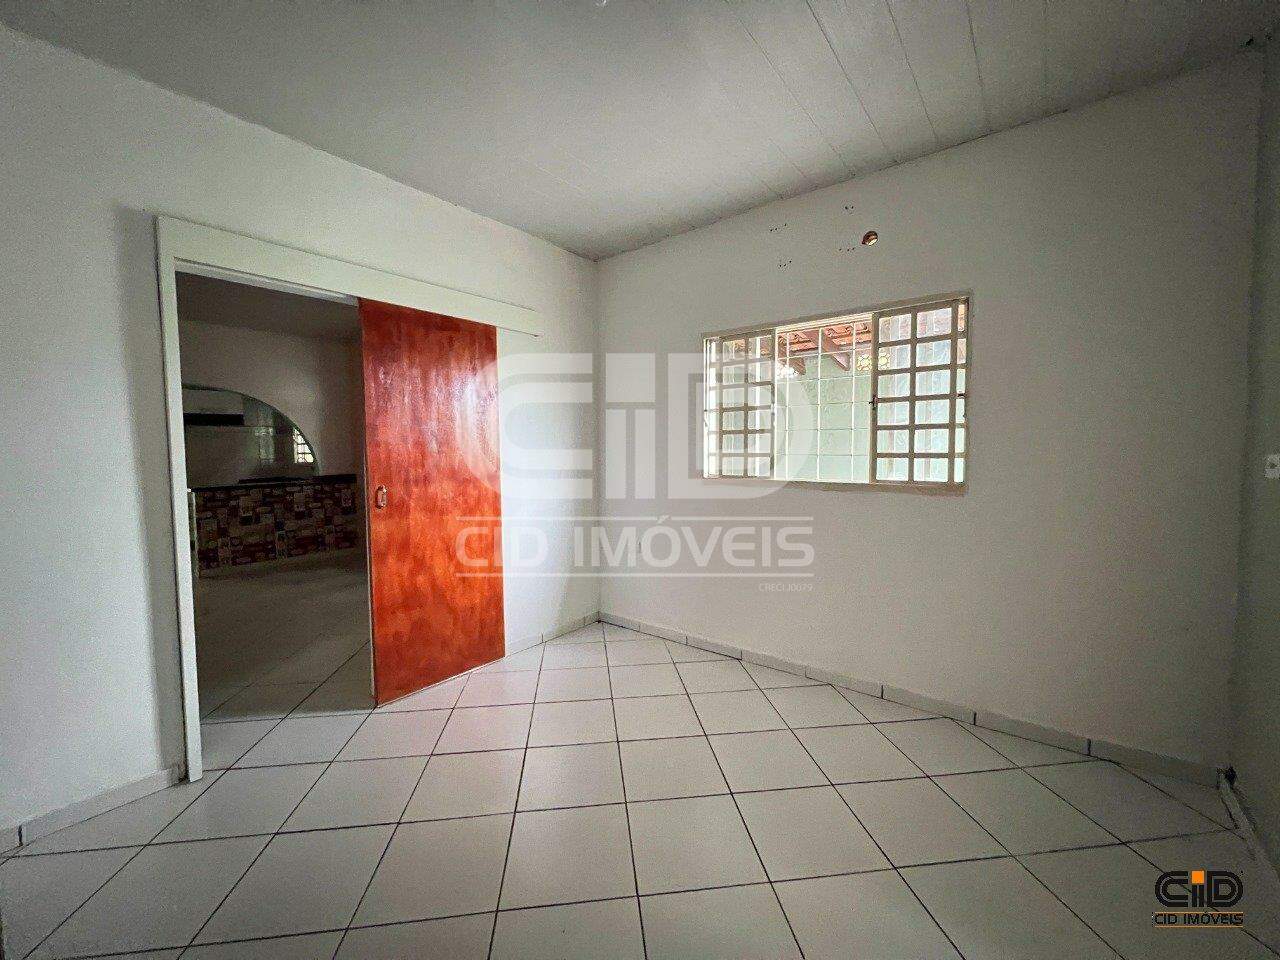 Casa, 4 quartos, 168 m² - Foto 3